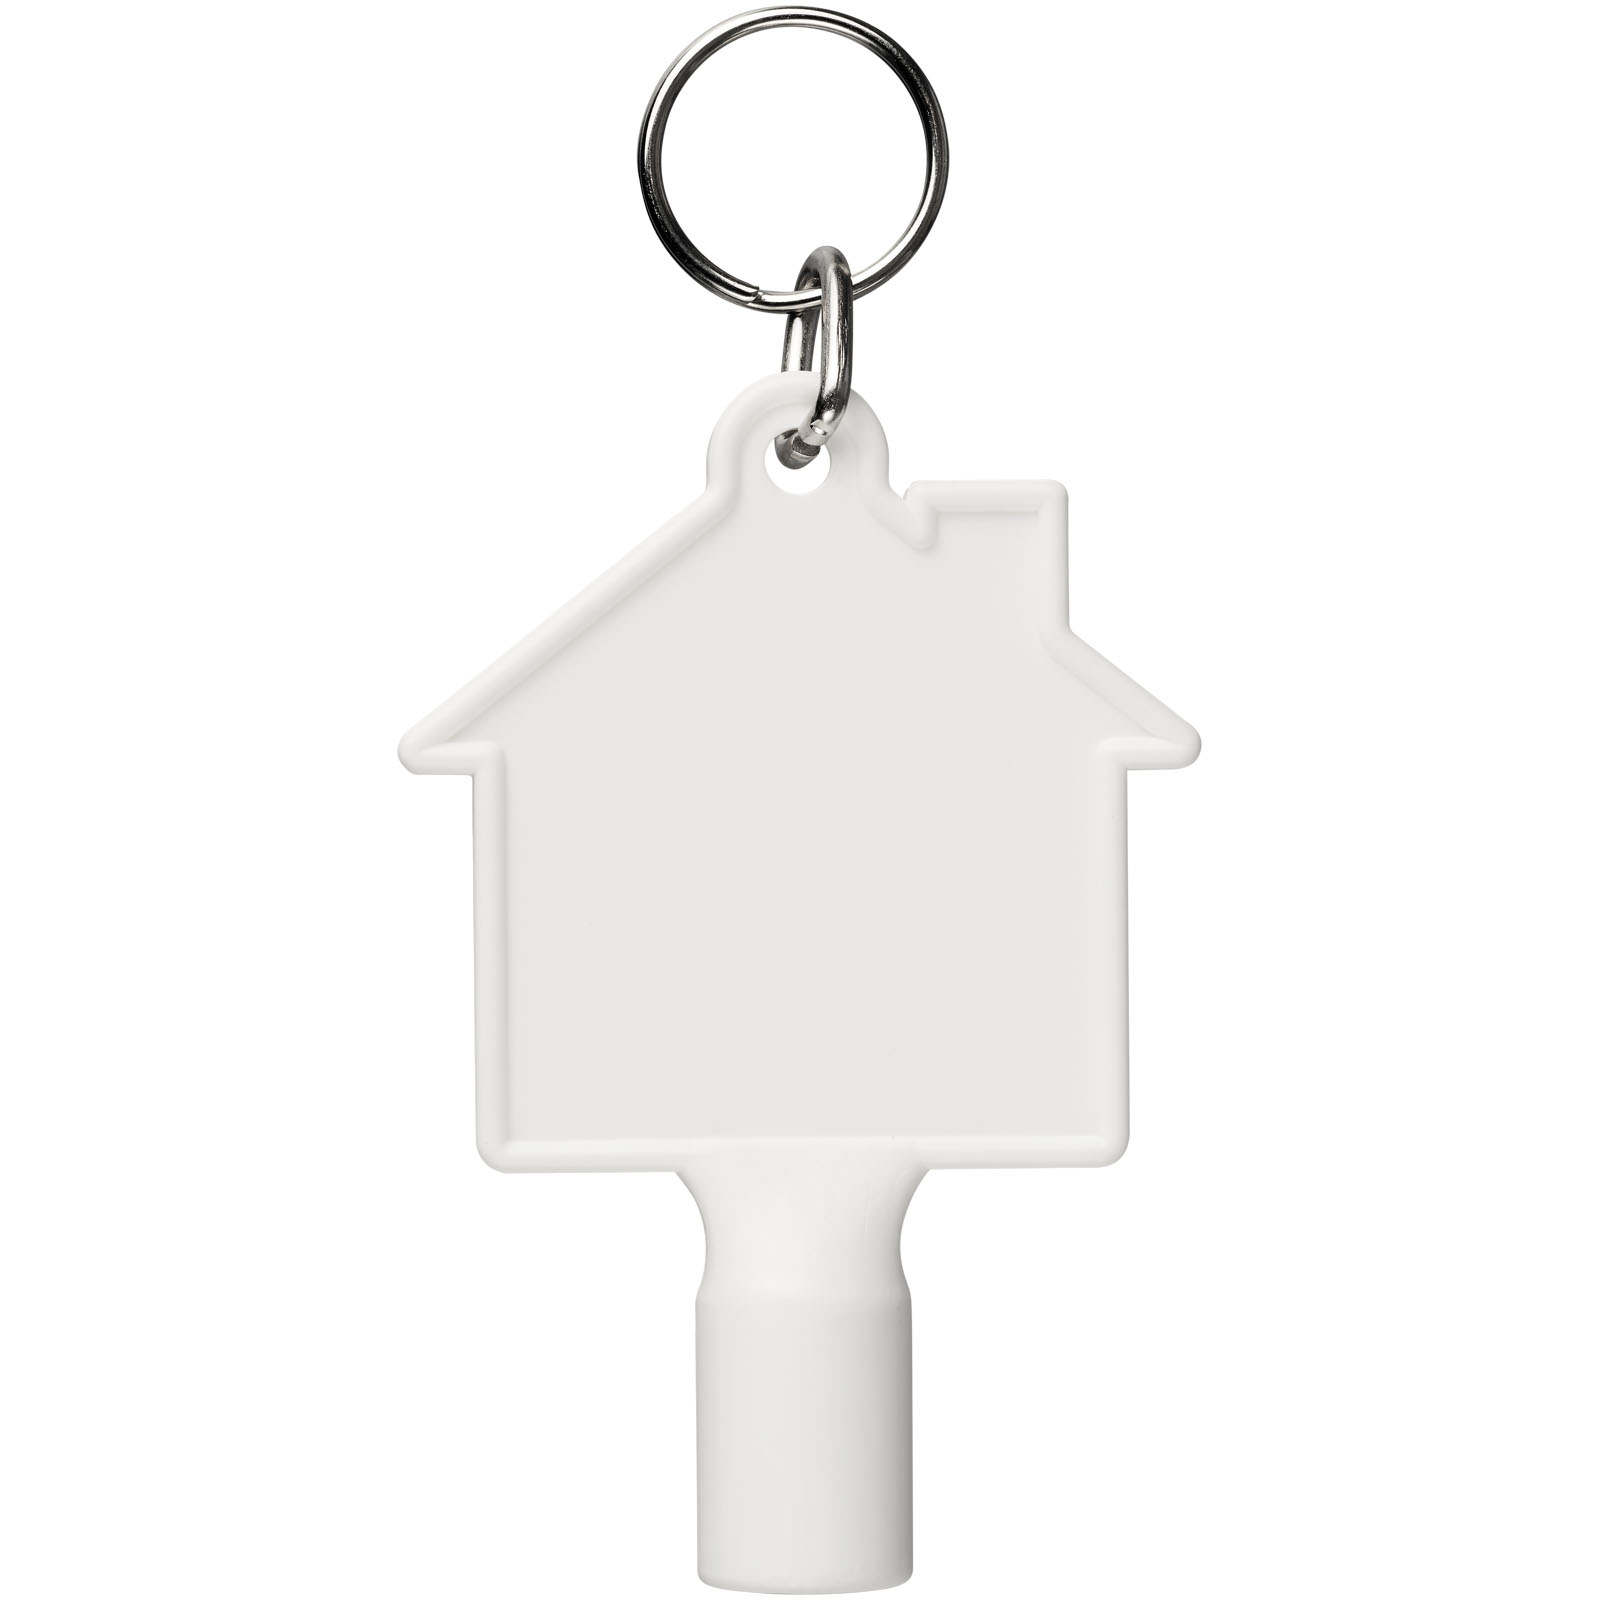 Porte-clés publicitaires - Porte-clés Maximilian pour clé utilitaire recyclée en forme de maison - 1